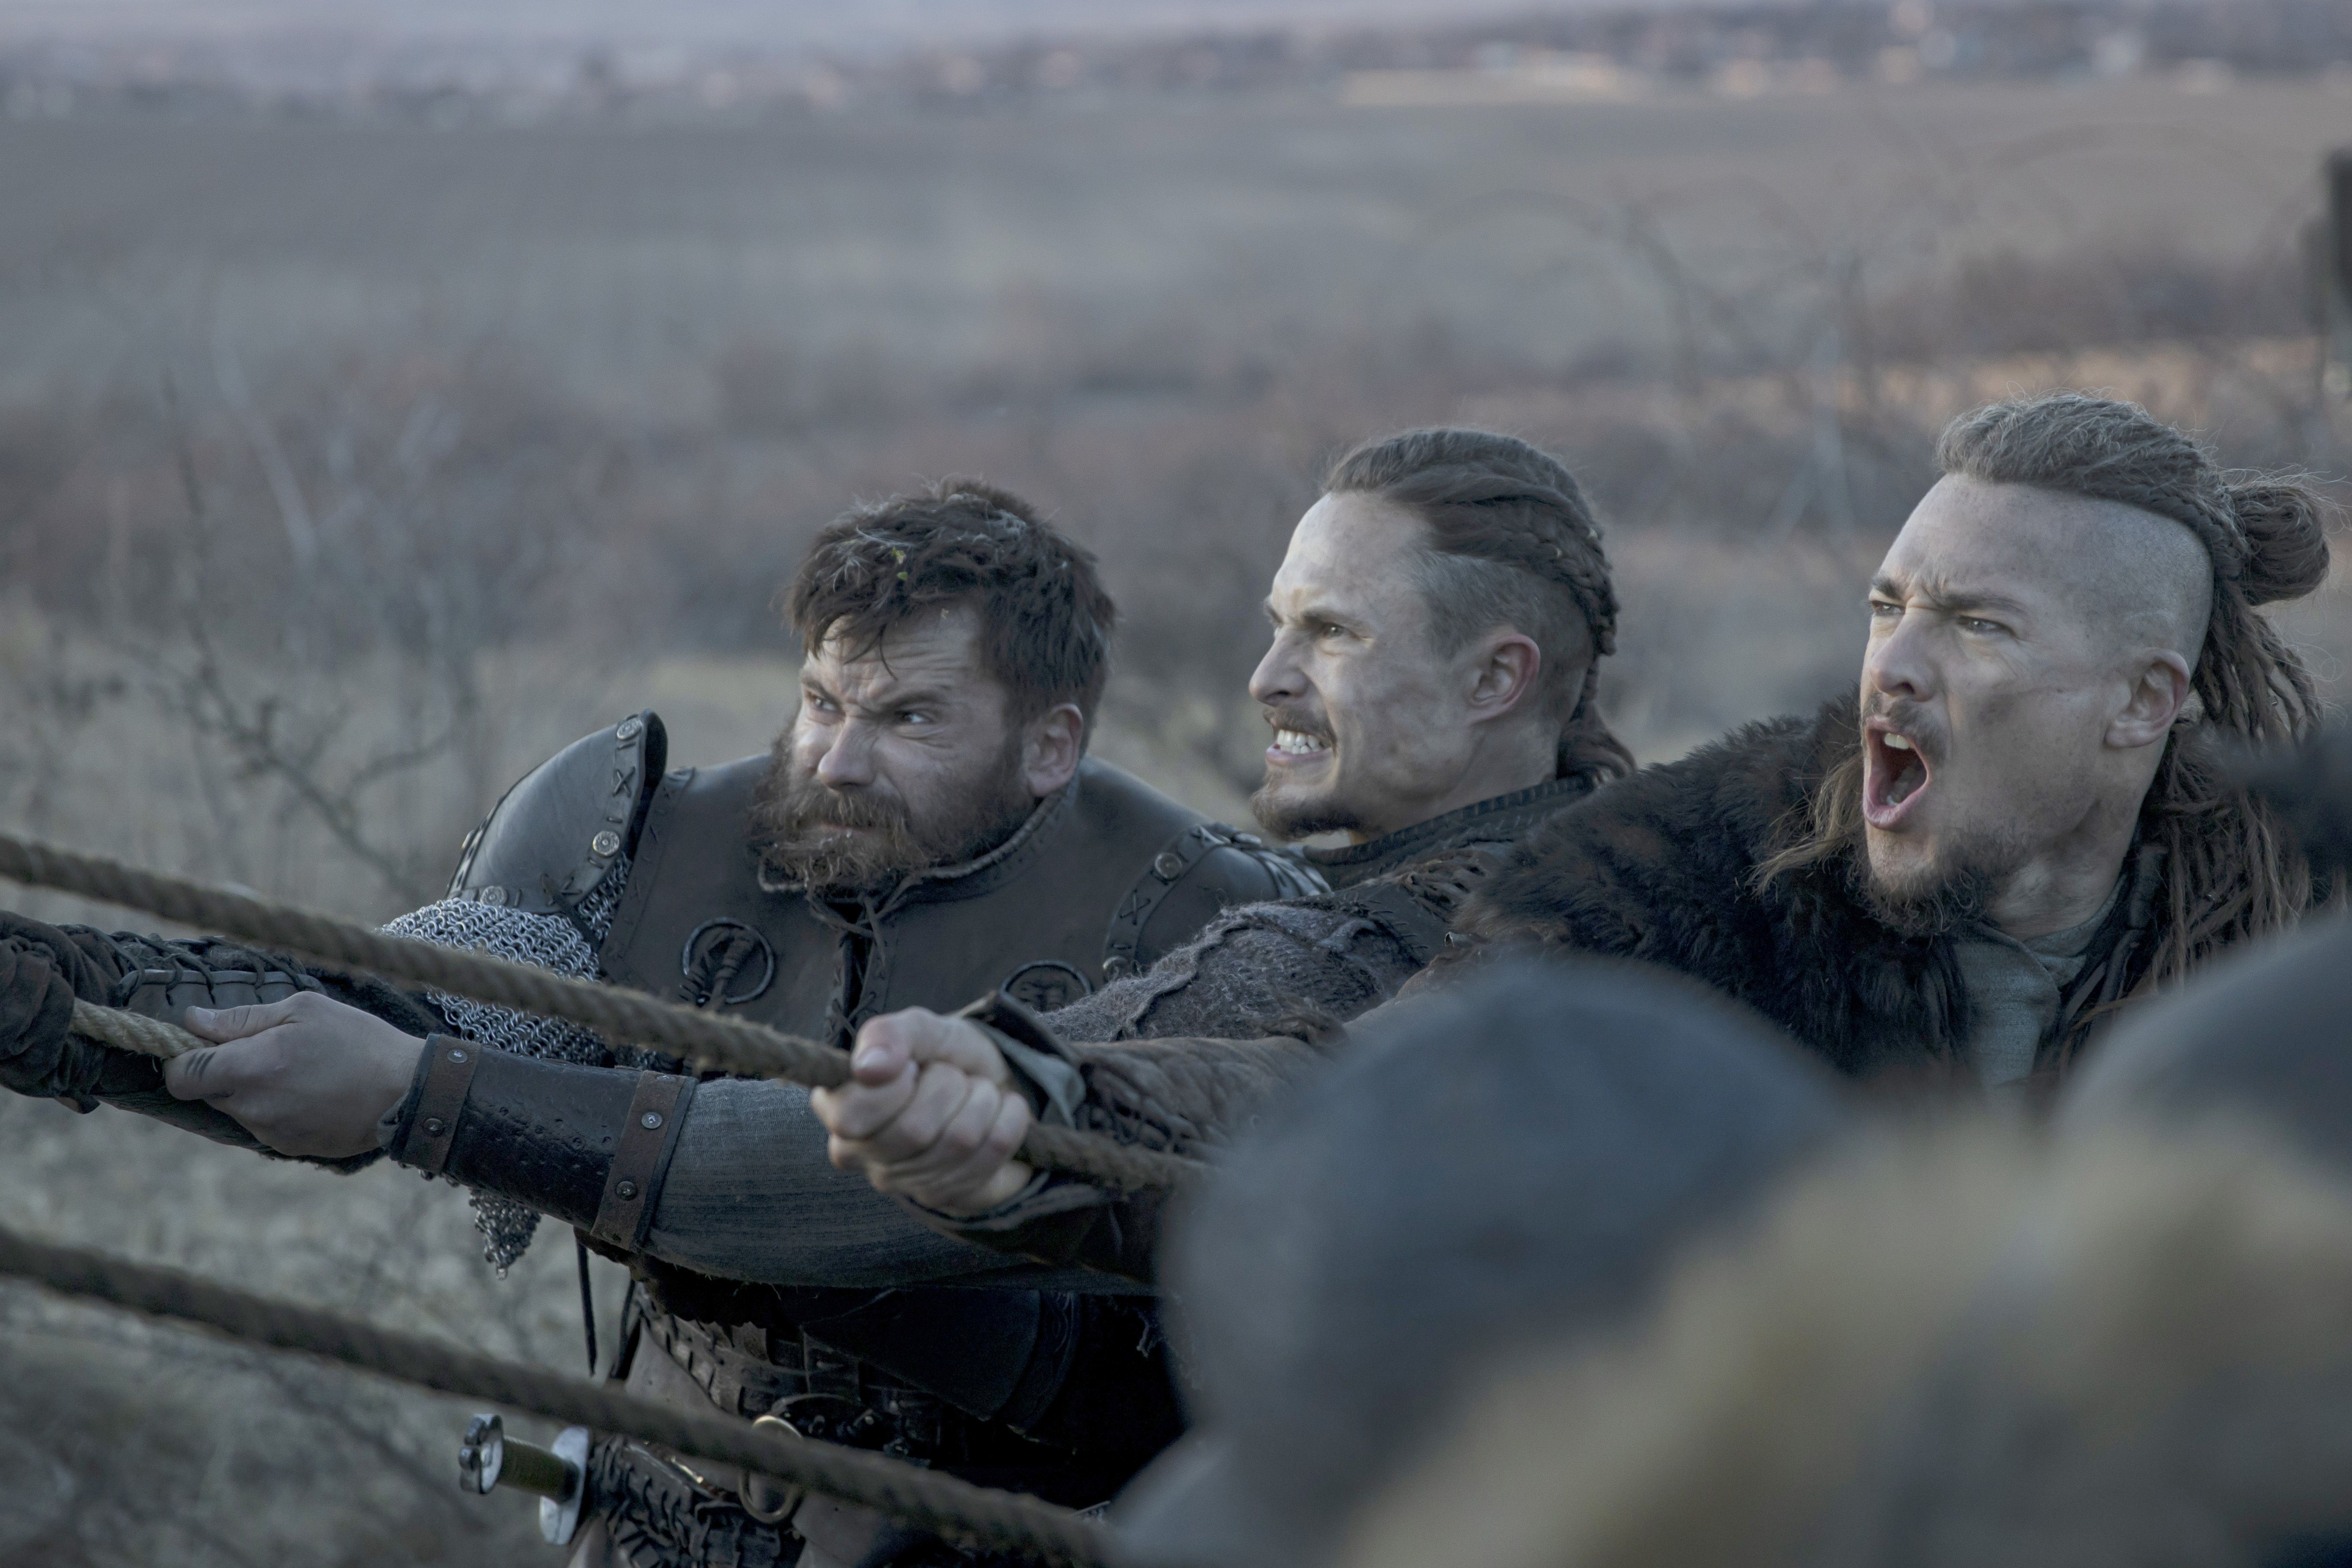 The Last Kingdom follow-up movie Seven Kings Must Die begins filming